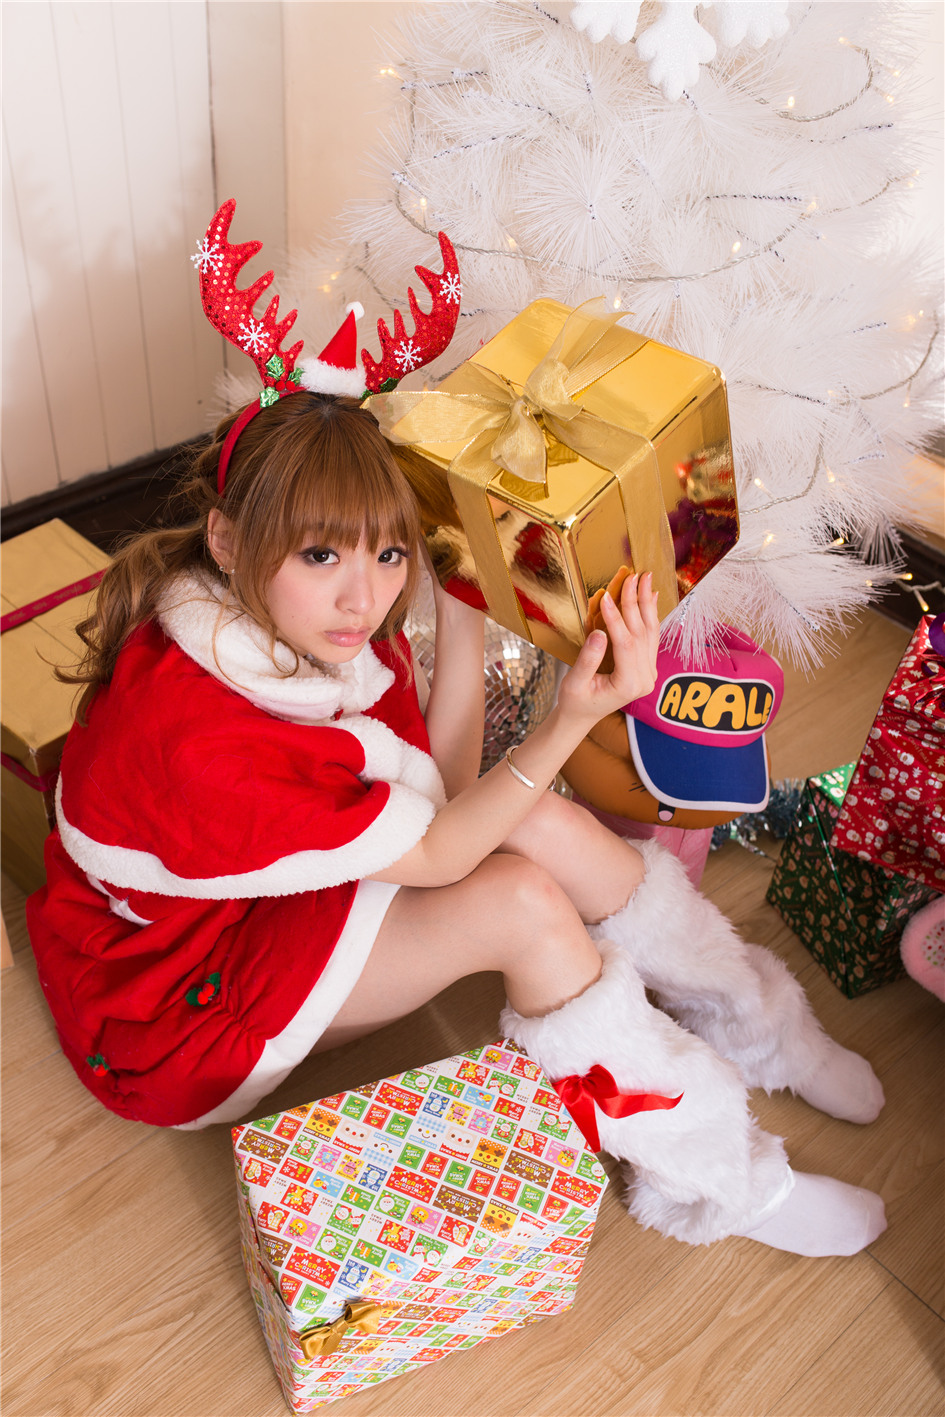 [美女写真] 清纯美女MIO兔 圣诞节棚拍第29张